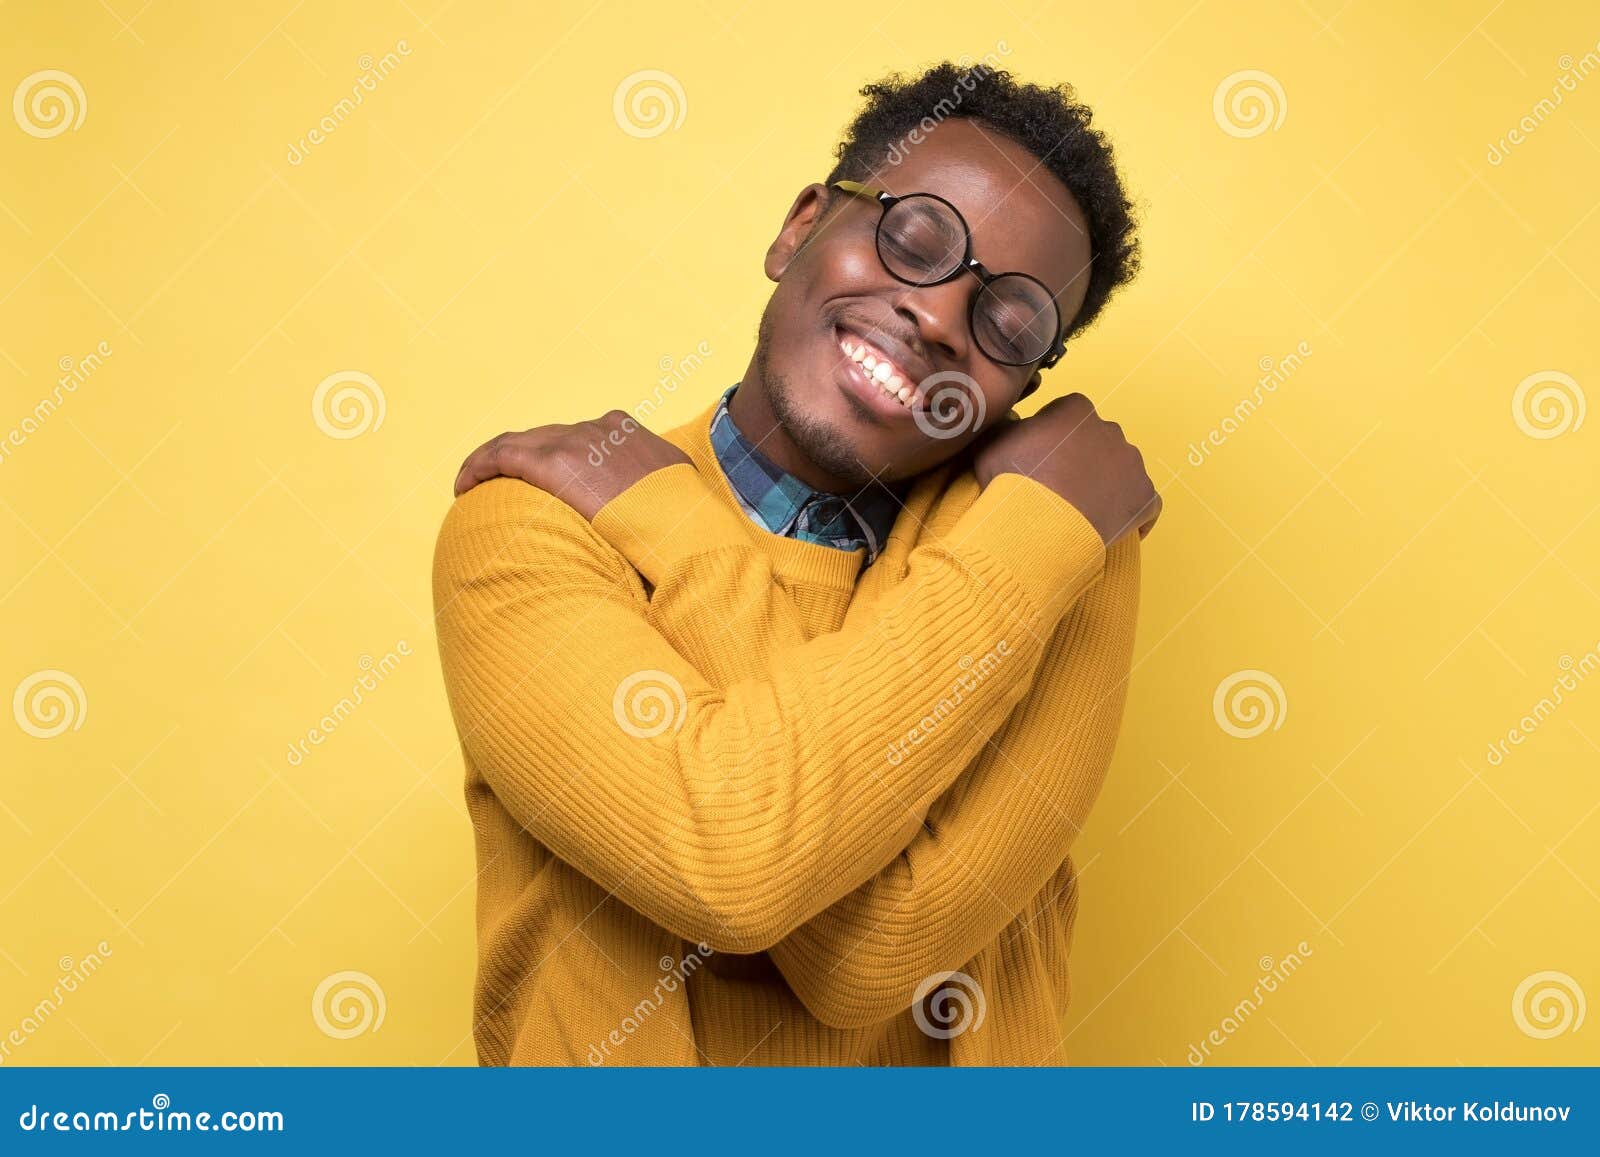 pleased african american man hugs himself, has high self esteem